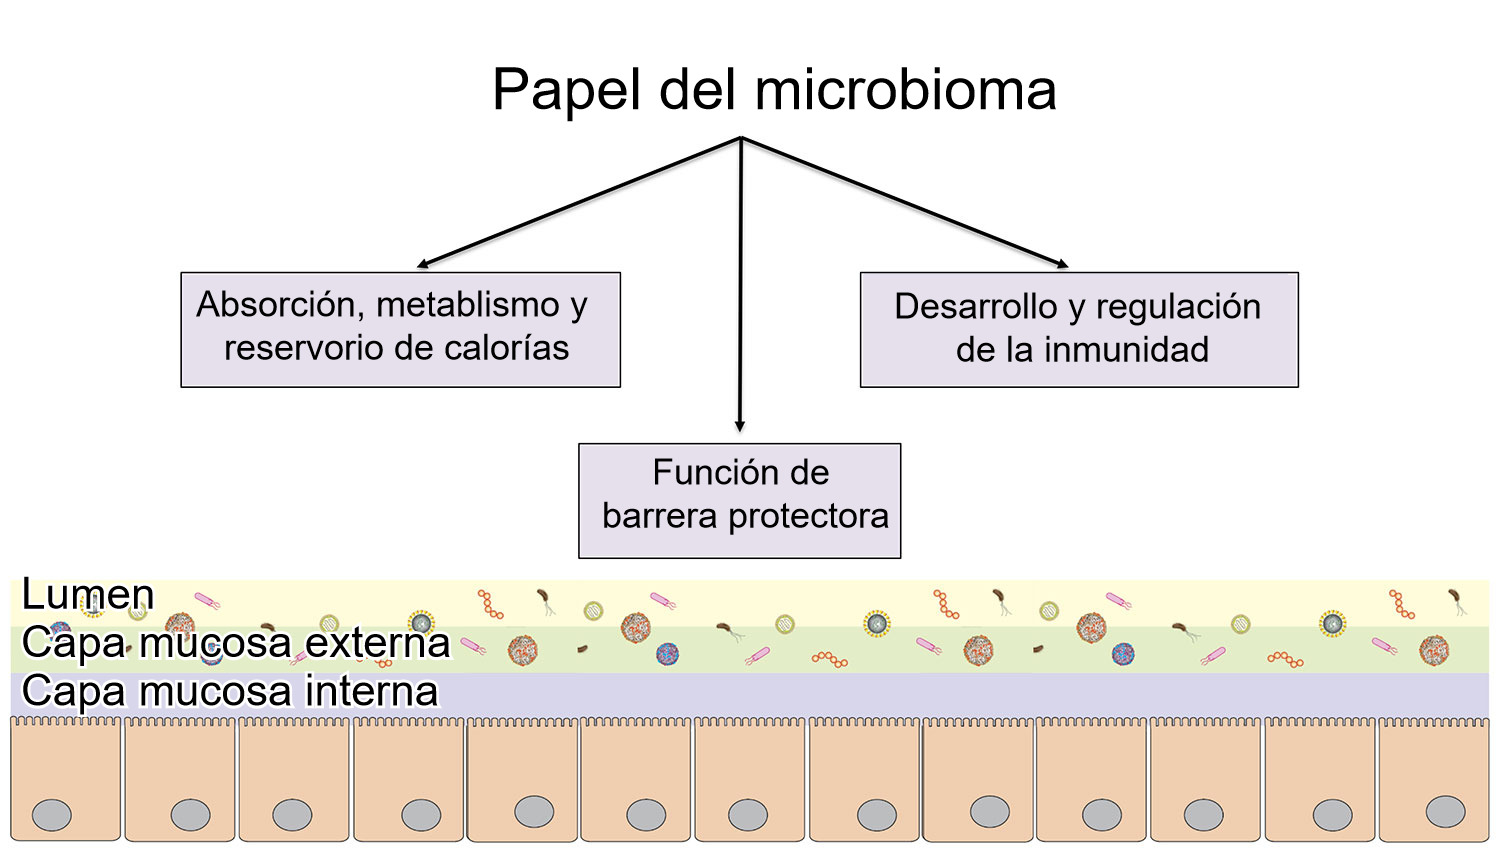 <p>Funciones del microbioma:barrera intestinal, digesti&oacute;n y metabolismo de nutrientes y regulaci&oacute;n de la inmunidad.</p>
